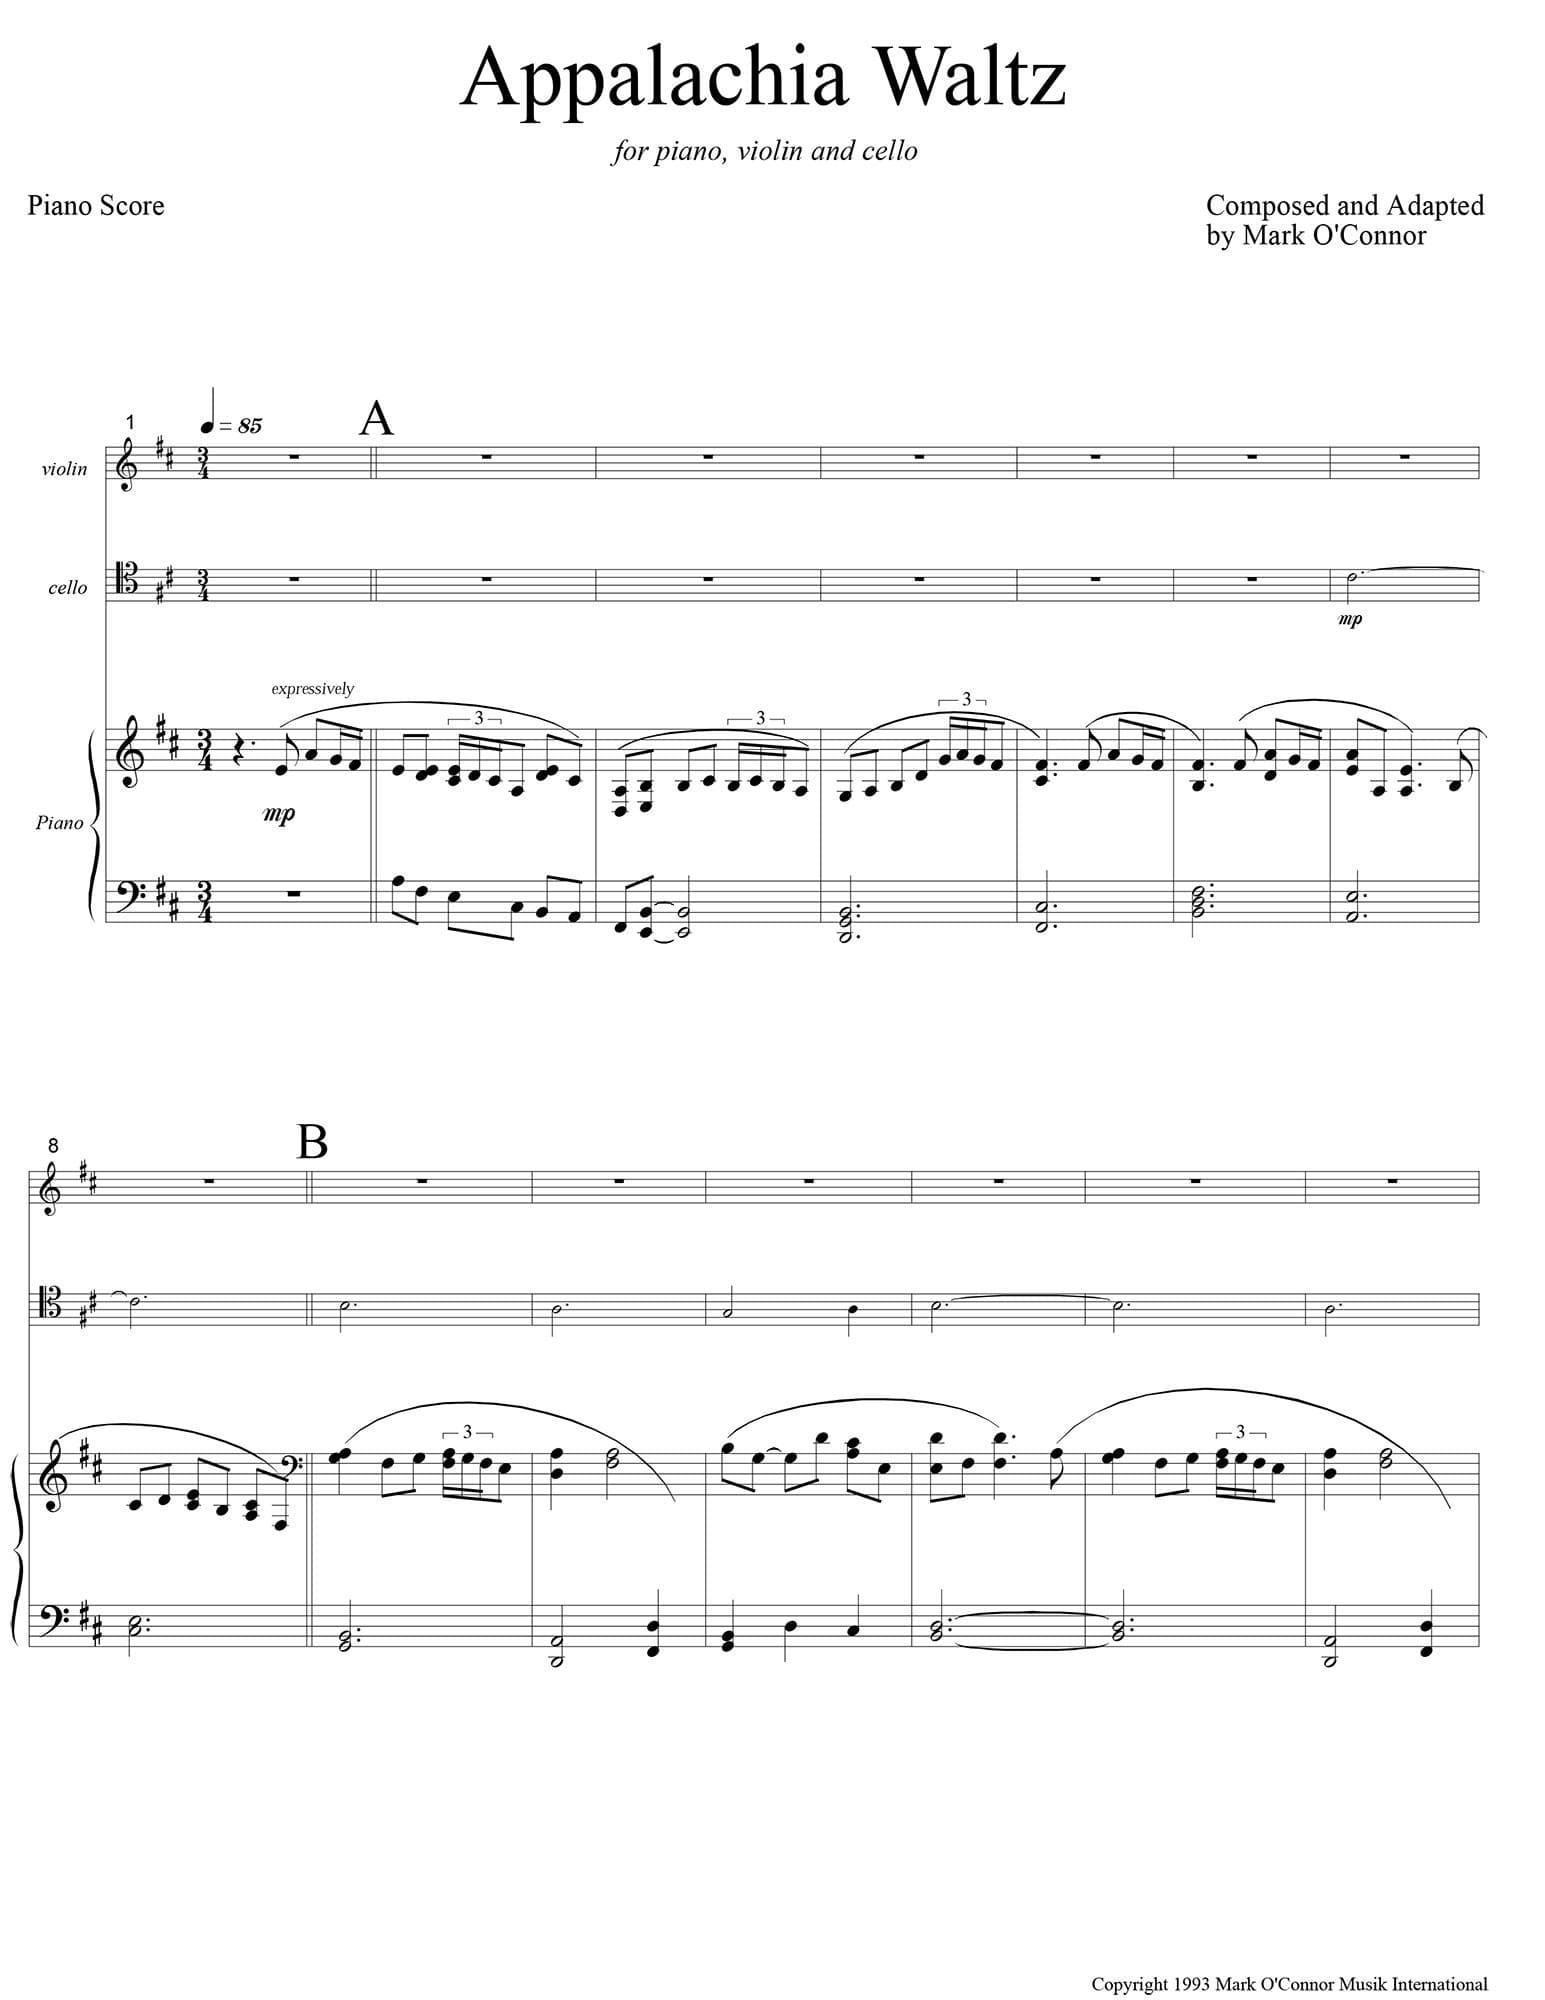 O'Connor, Mark - Appalachia Waltz for Piano, Violin, and Cello - Piano Score - Digital Download